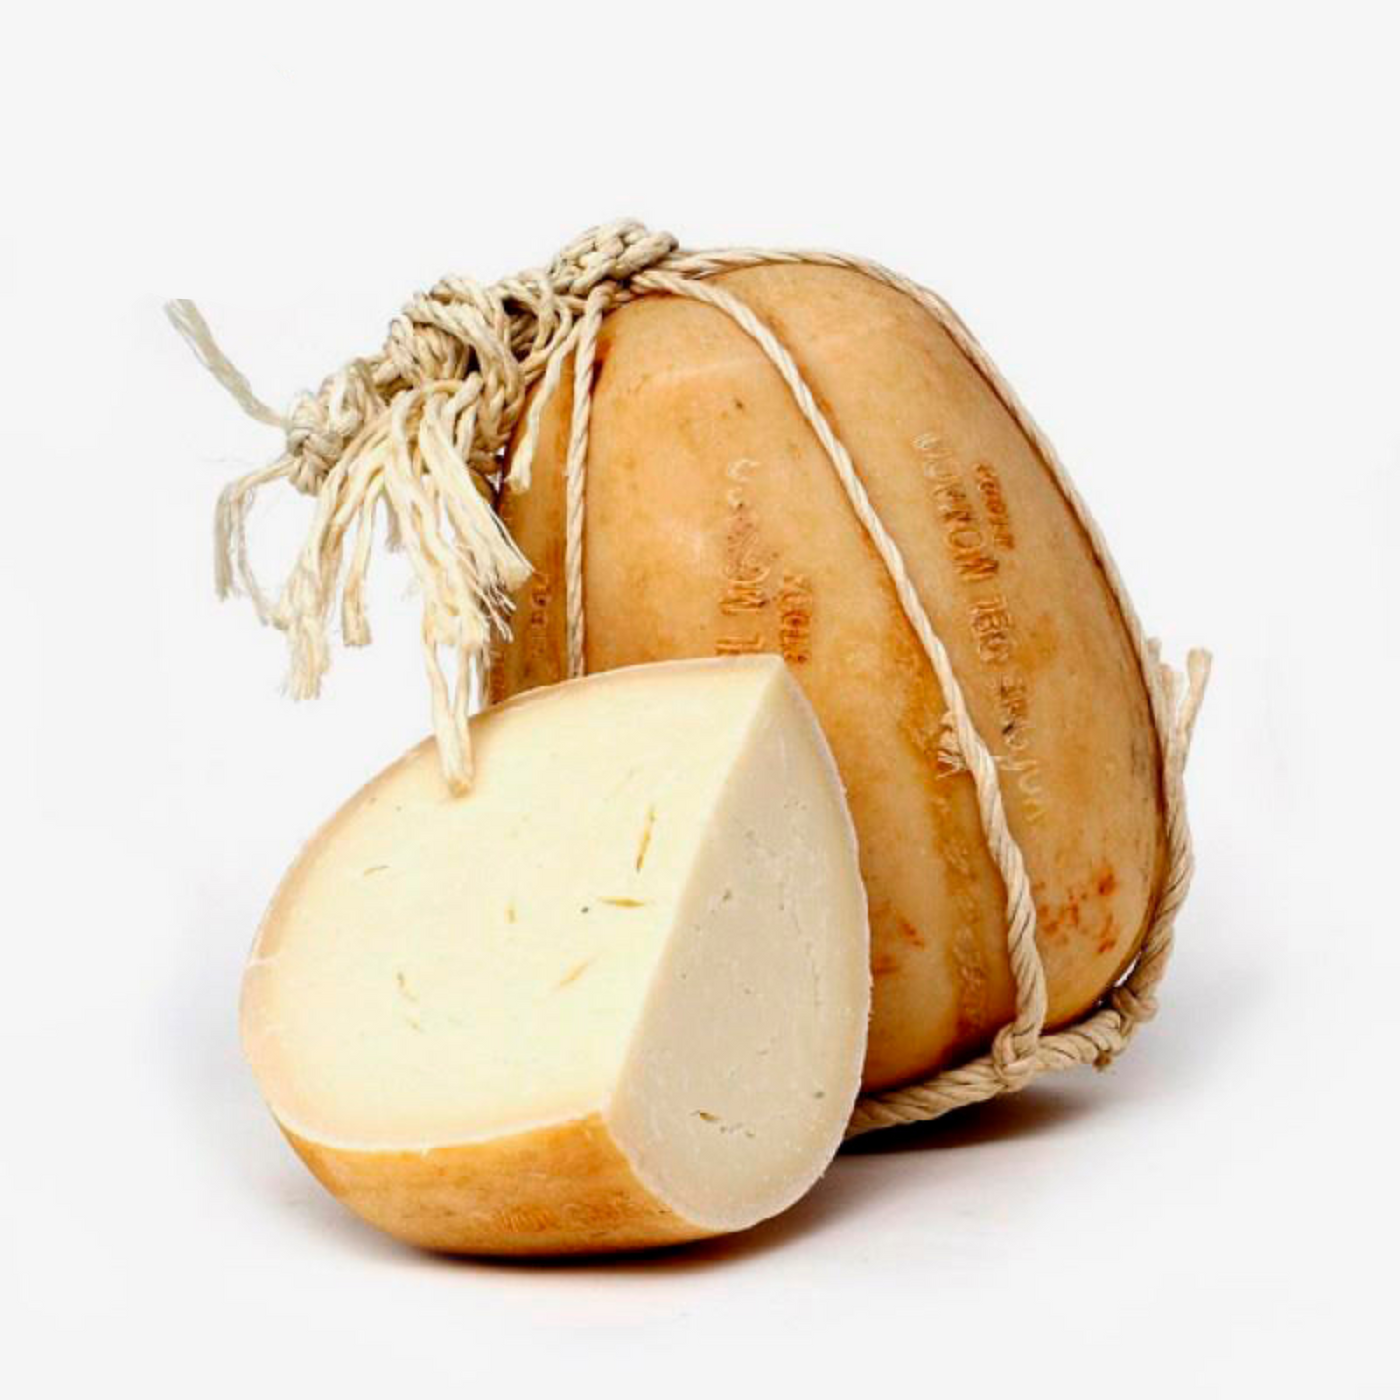 Provolone del Monaco: Distinctive Italian Provolone Cheese